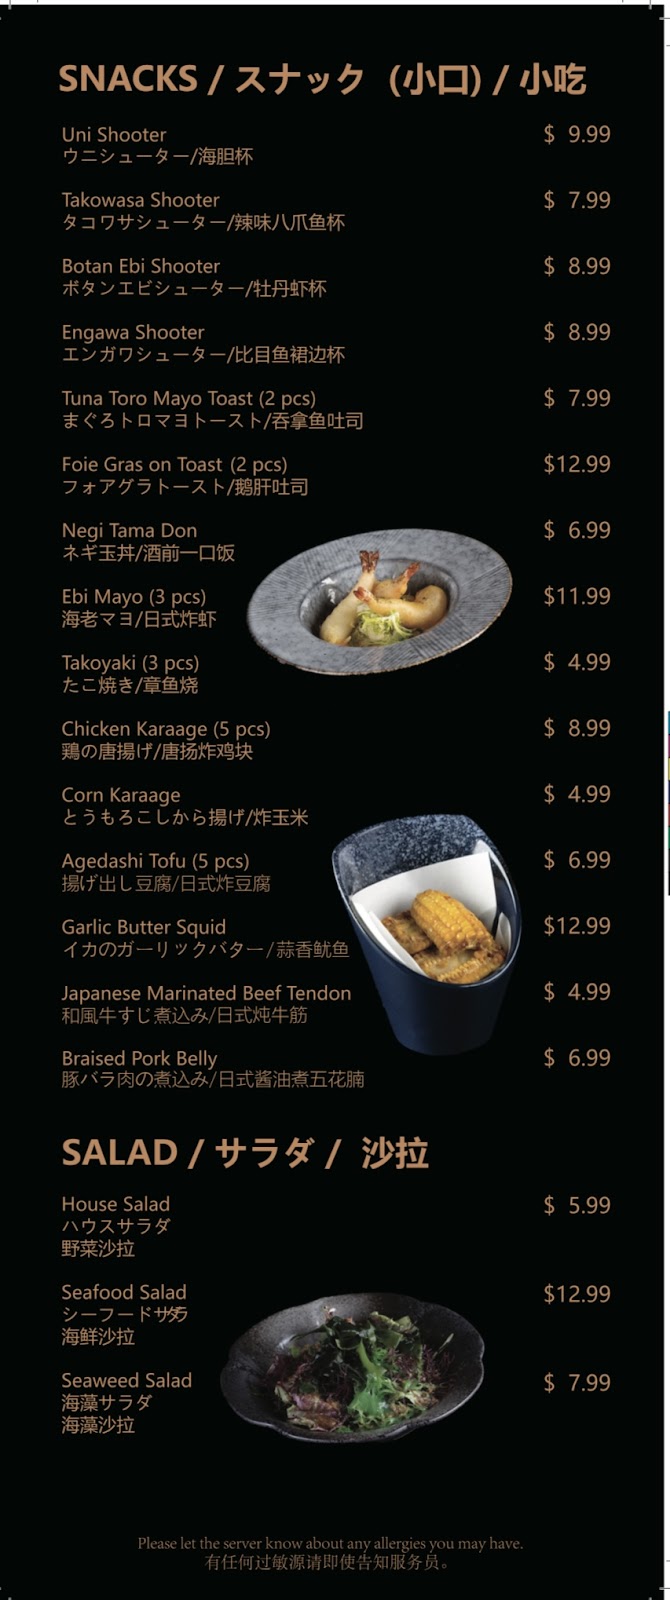 深夜食堂Meet Night Japanese Restaurant | 2155 Allison Rd #222, Vancouver, BC V6T 1T5, Canada | Phone: (236) 476-3370